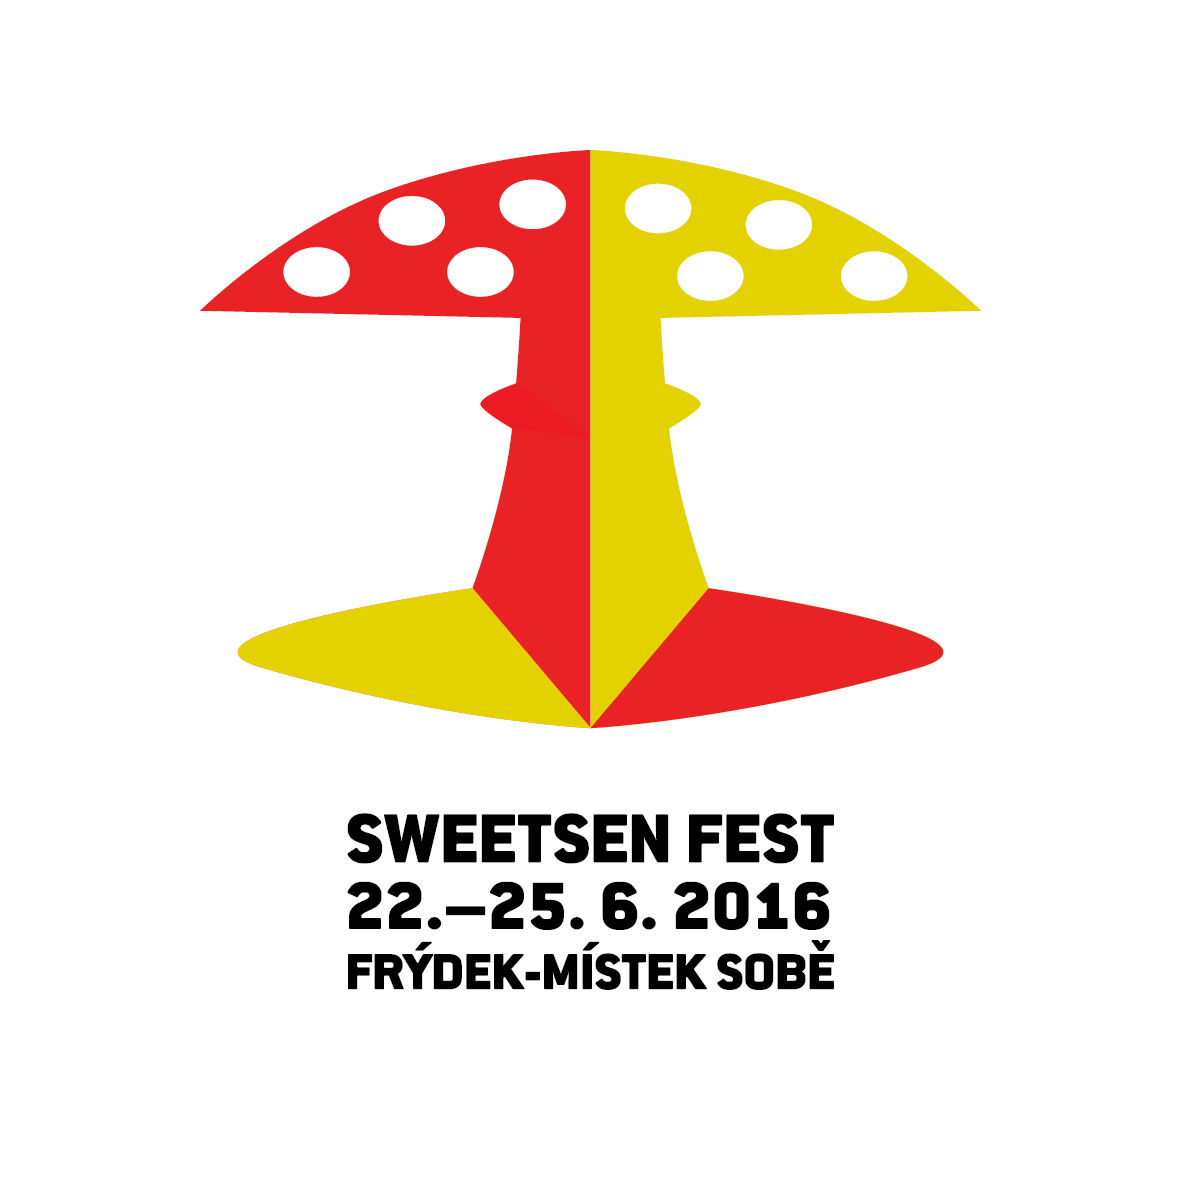 Sweetsen fest 2016